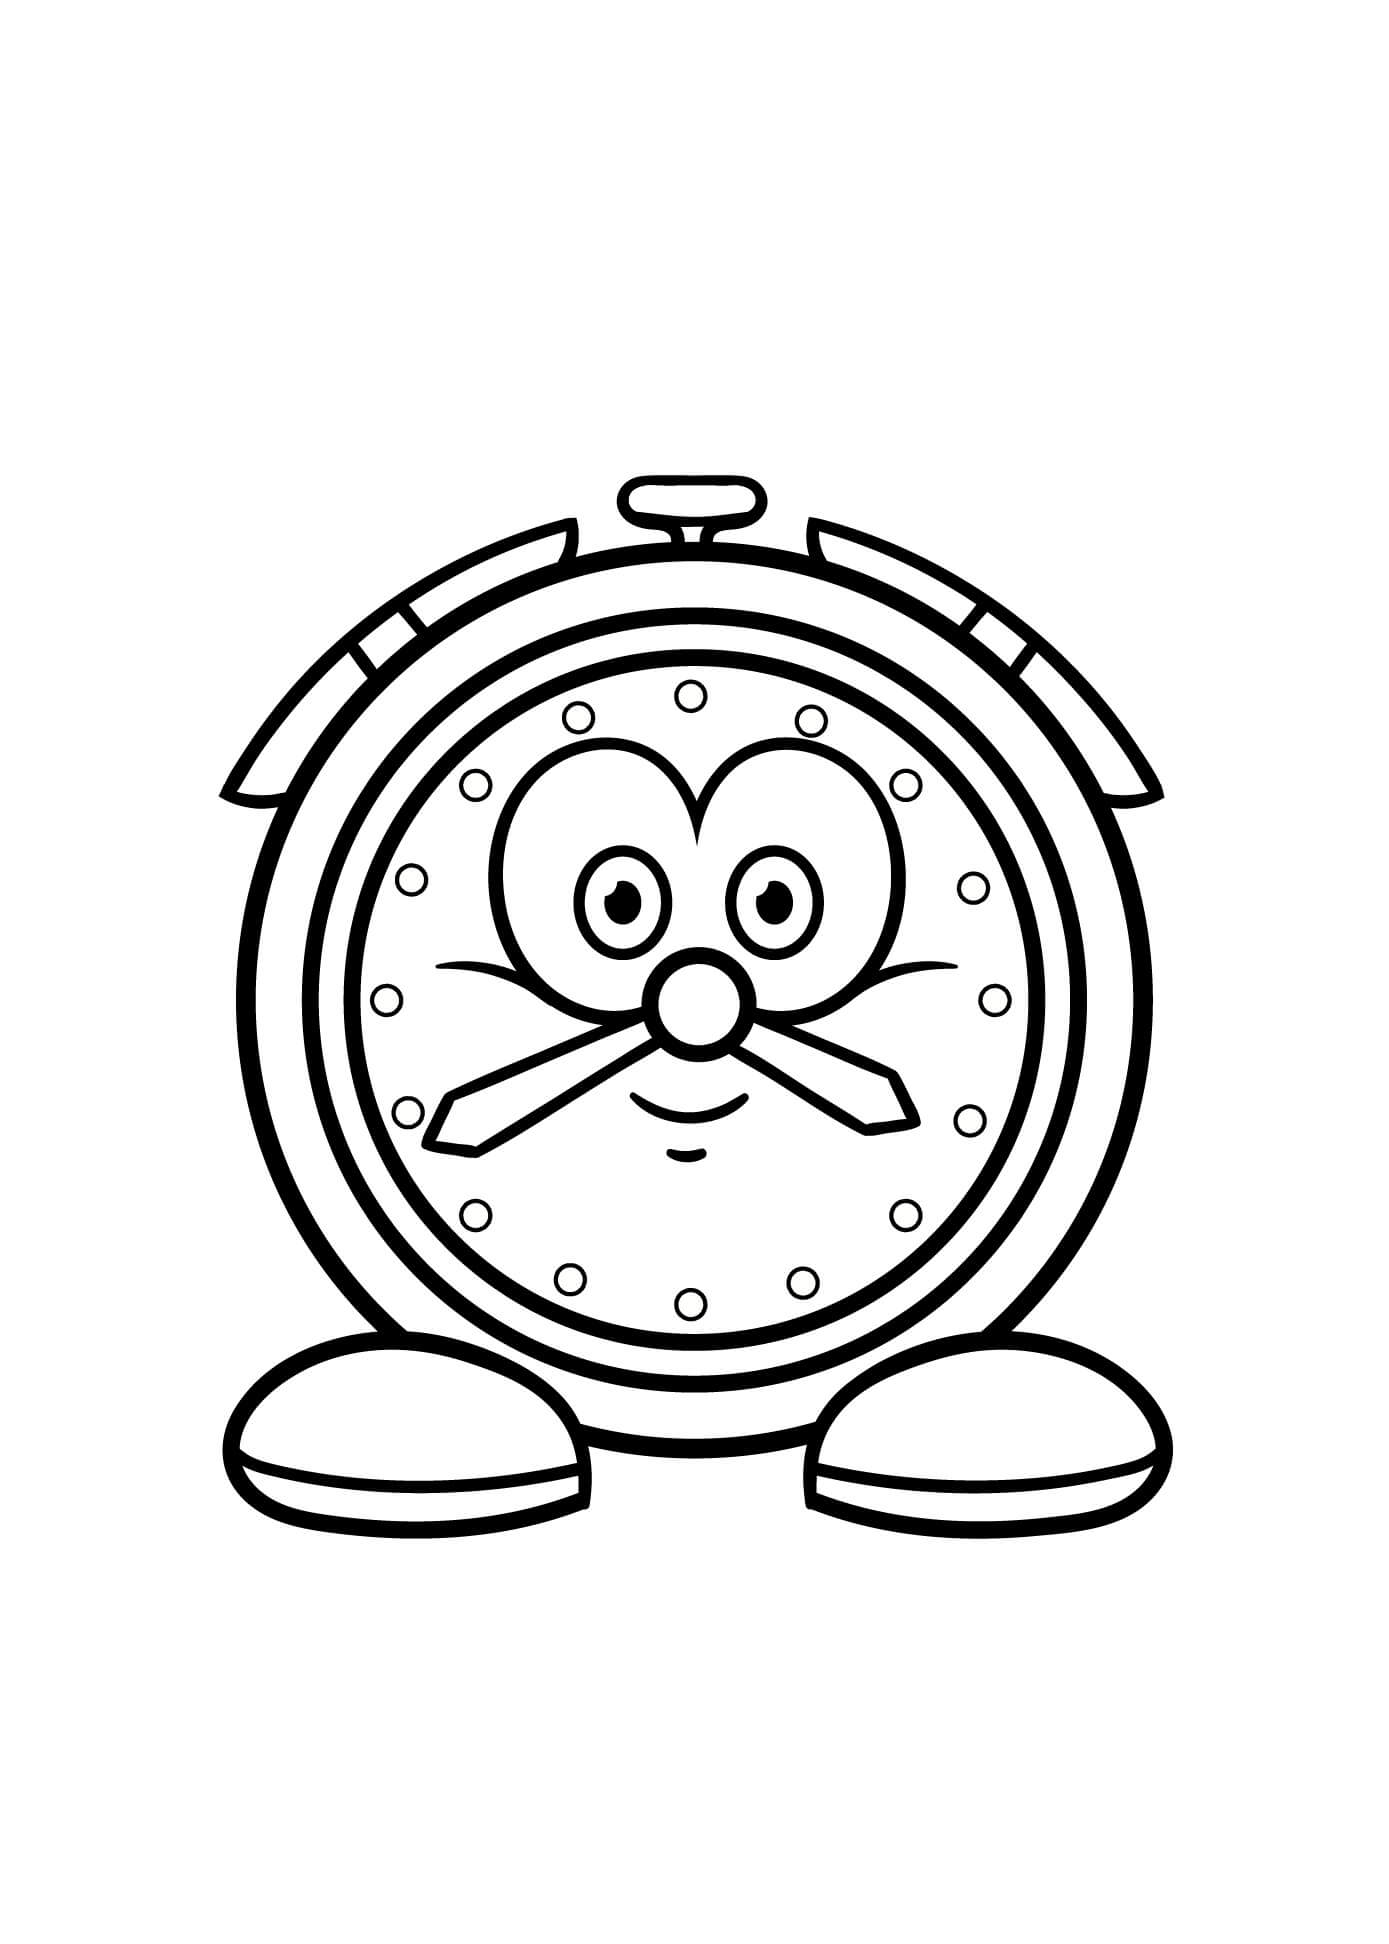 Horloge de Dessin Animé coloring page